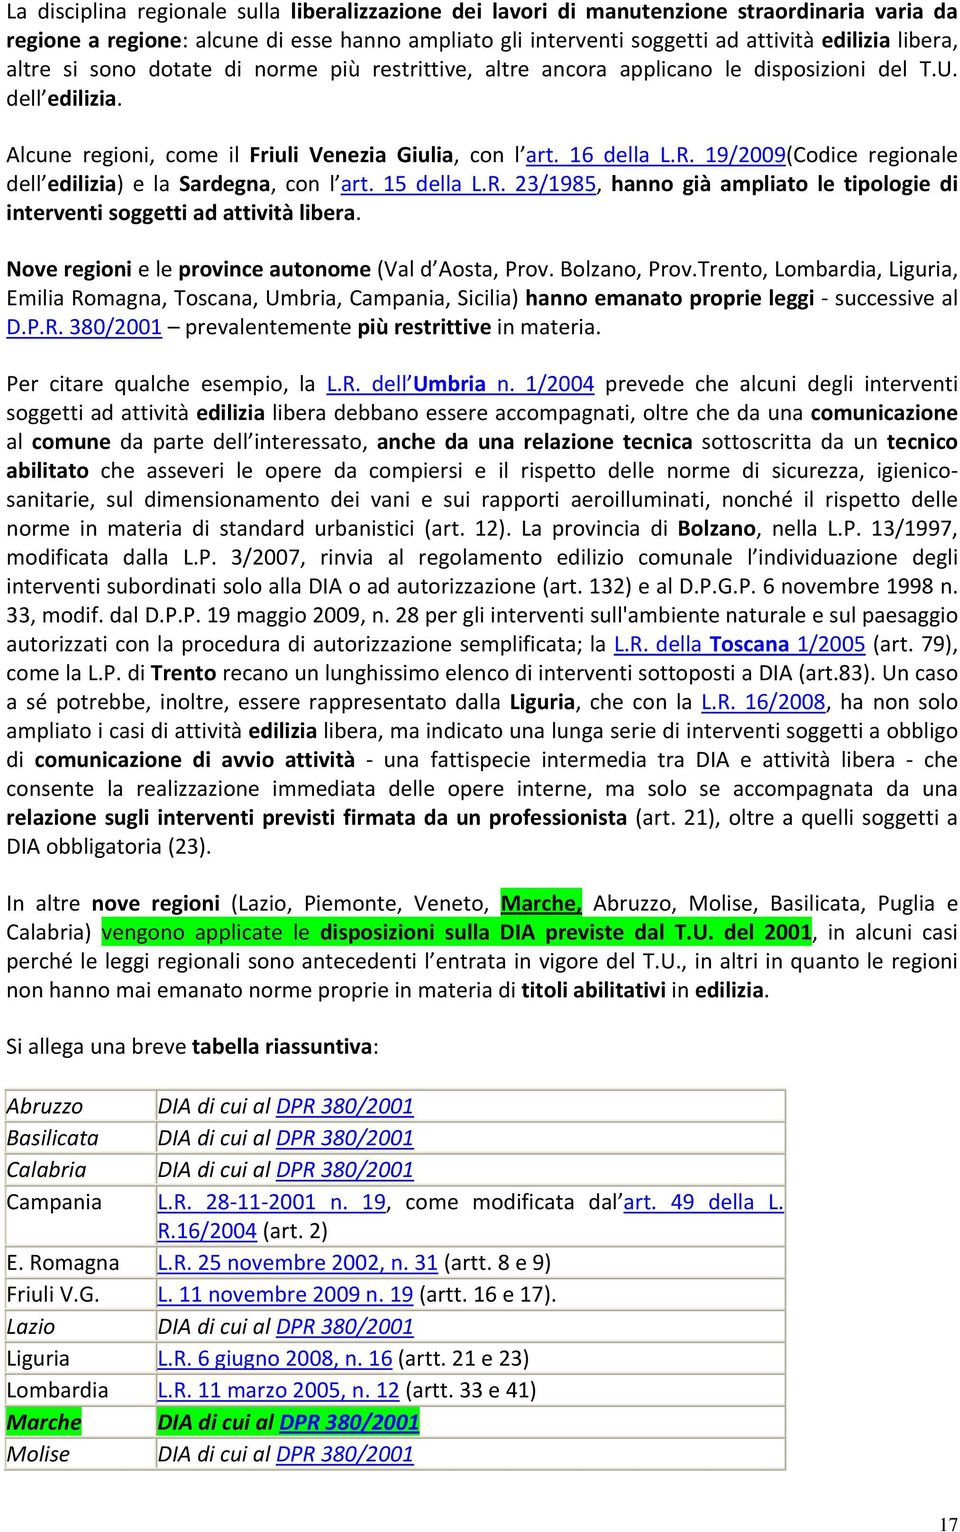 19/2009(Codice regionale dell edilizia) e la Sardegna, con l art. 15 della L.R. 23/1985, hanno già ampliato le tipologie di interventi soggetti ad attività libera.